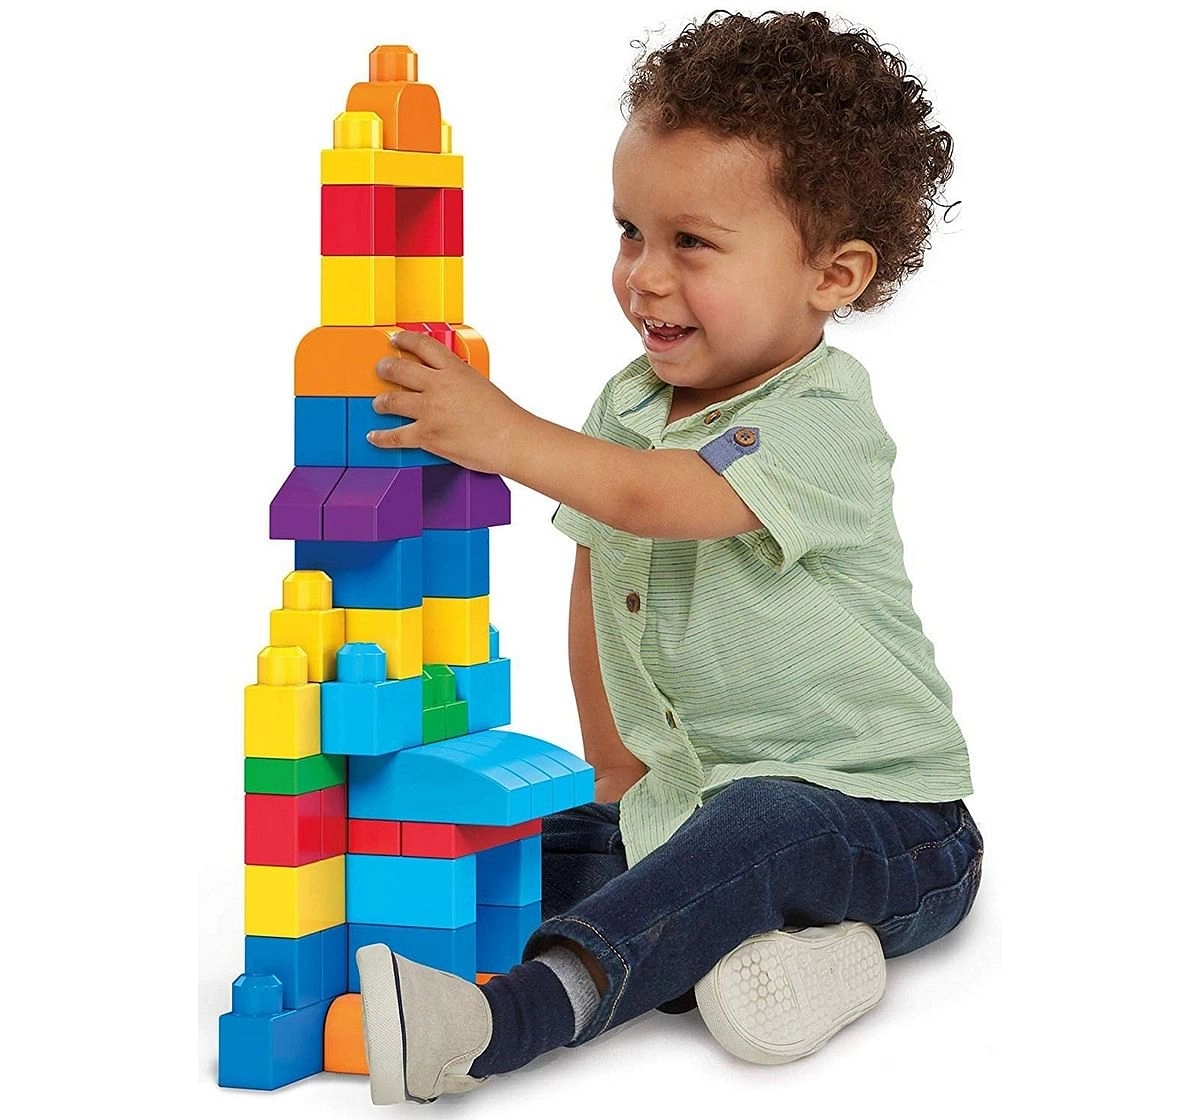 Mega Blocks First Builders Big Building Bag, Multicolor Toddler Blocks for Kids age 12M+, Assorted